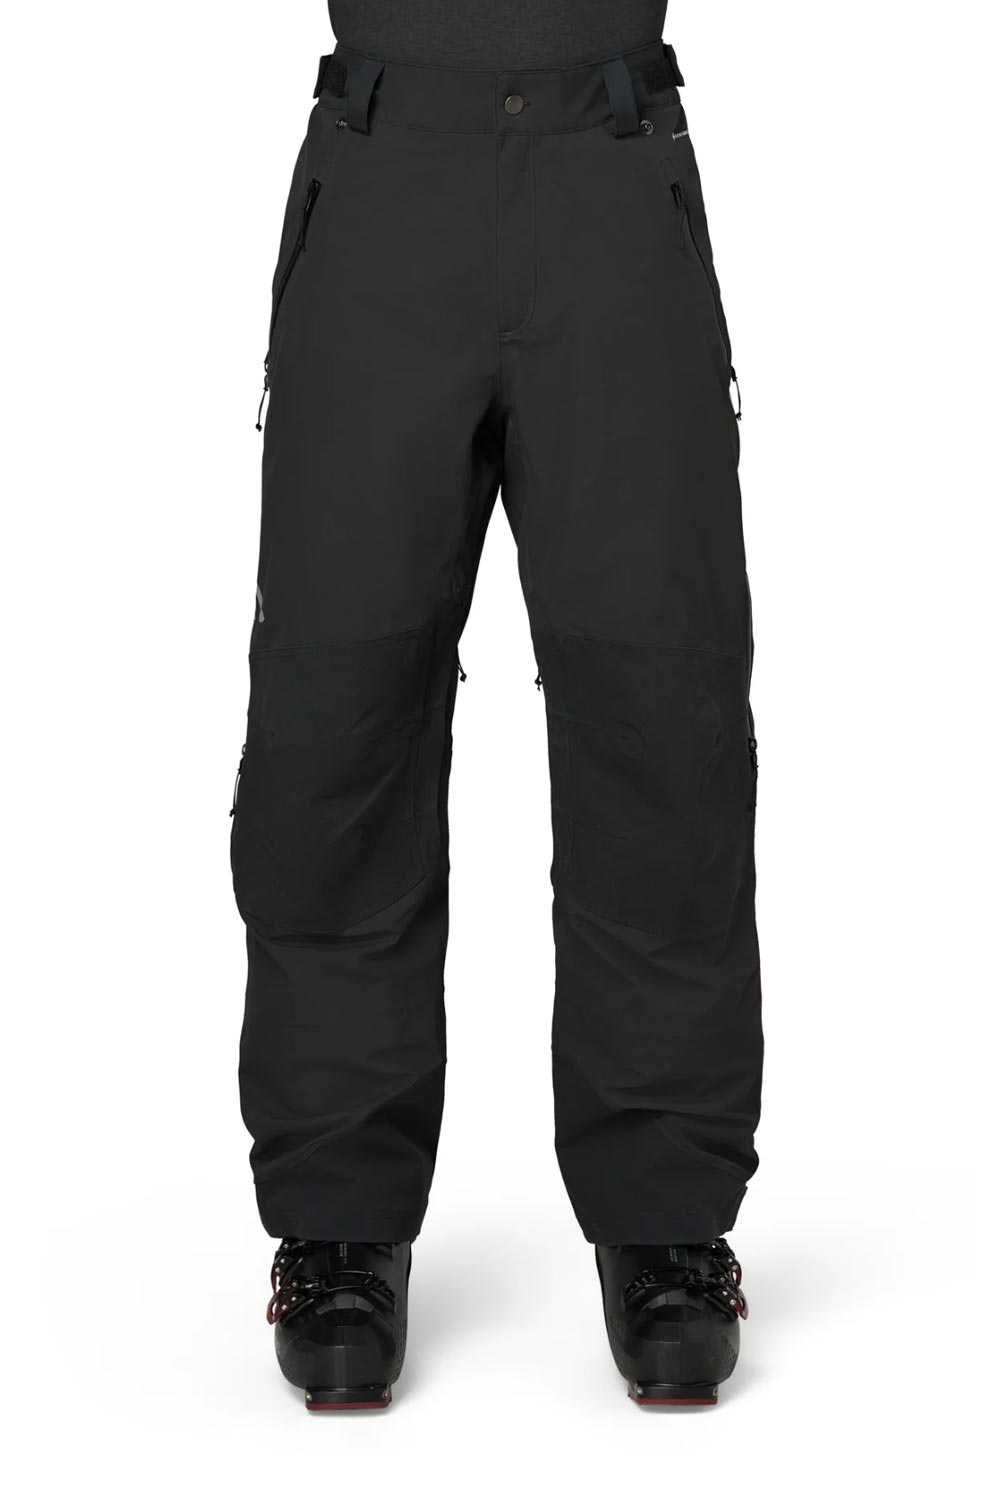 Flylow men's ski pants, black